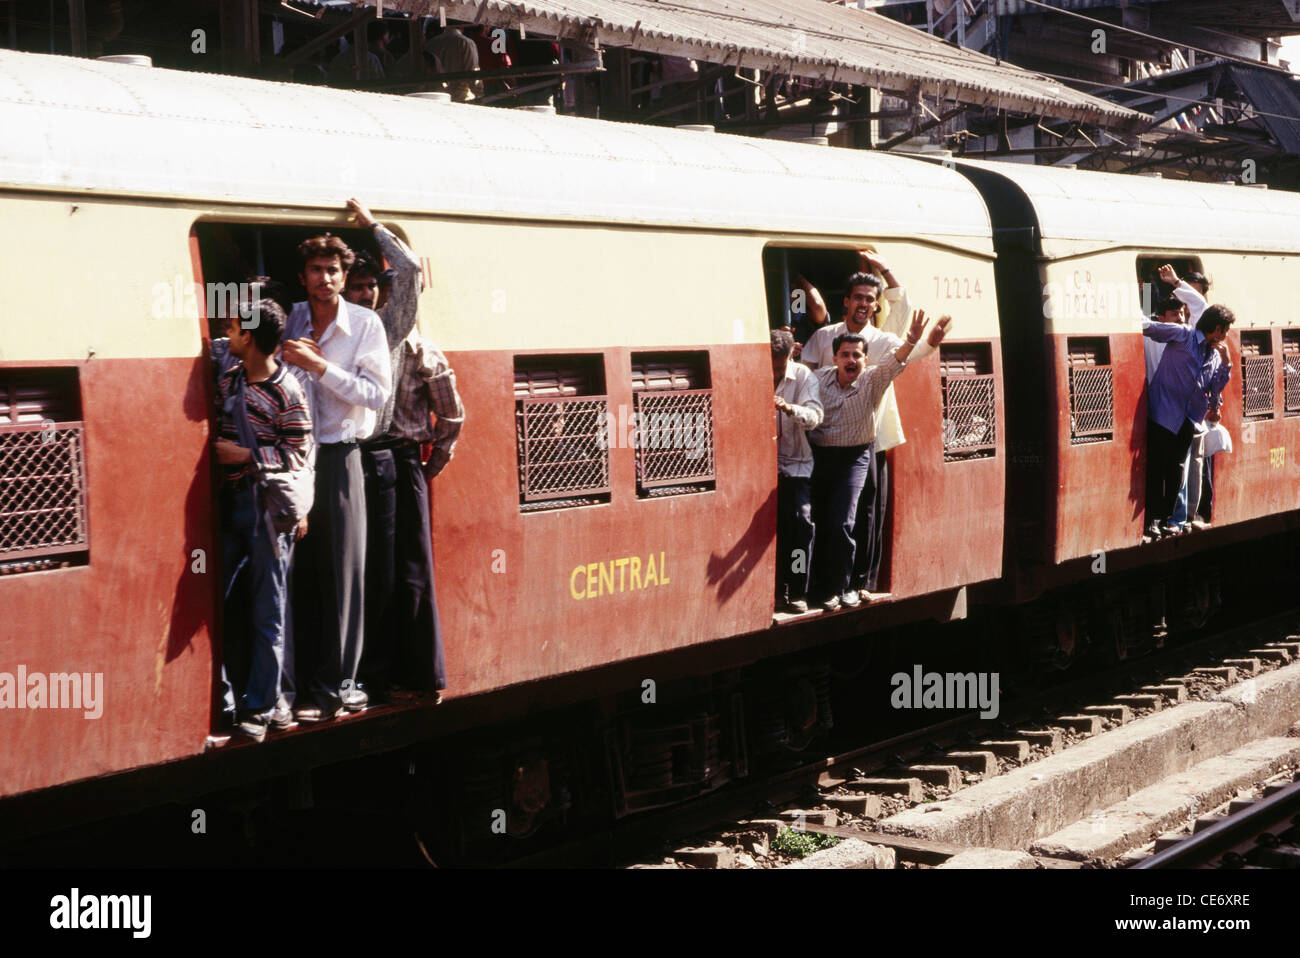 ANG 85550 : people crowded in local suburban train ; bombay mumbai ; maharashtra ; india Stock Photo